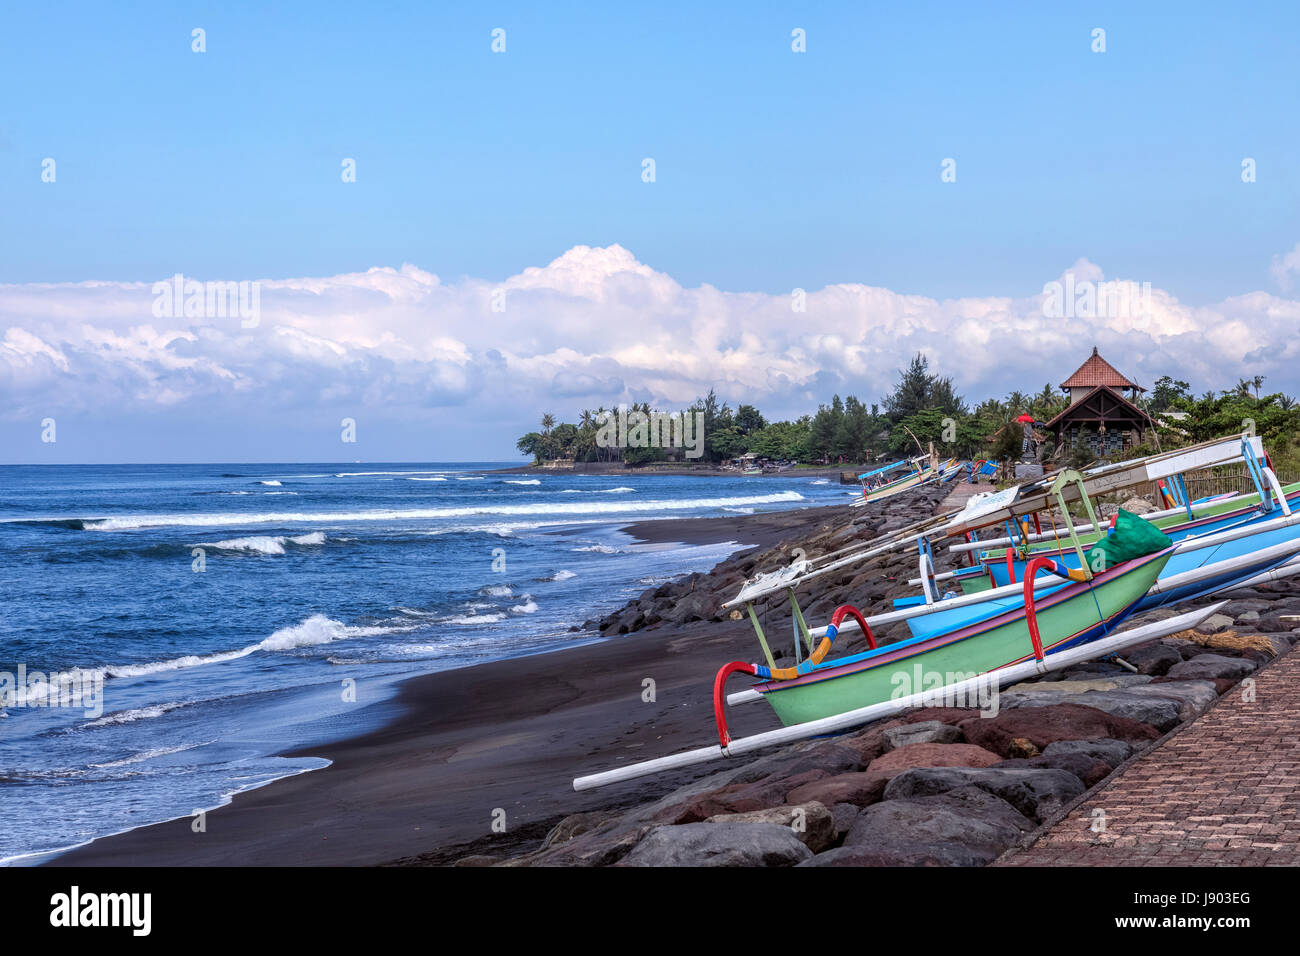 Jukungs am Strand Lebih, Bali, Indonesien, Asien Stockfoto